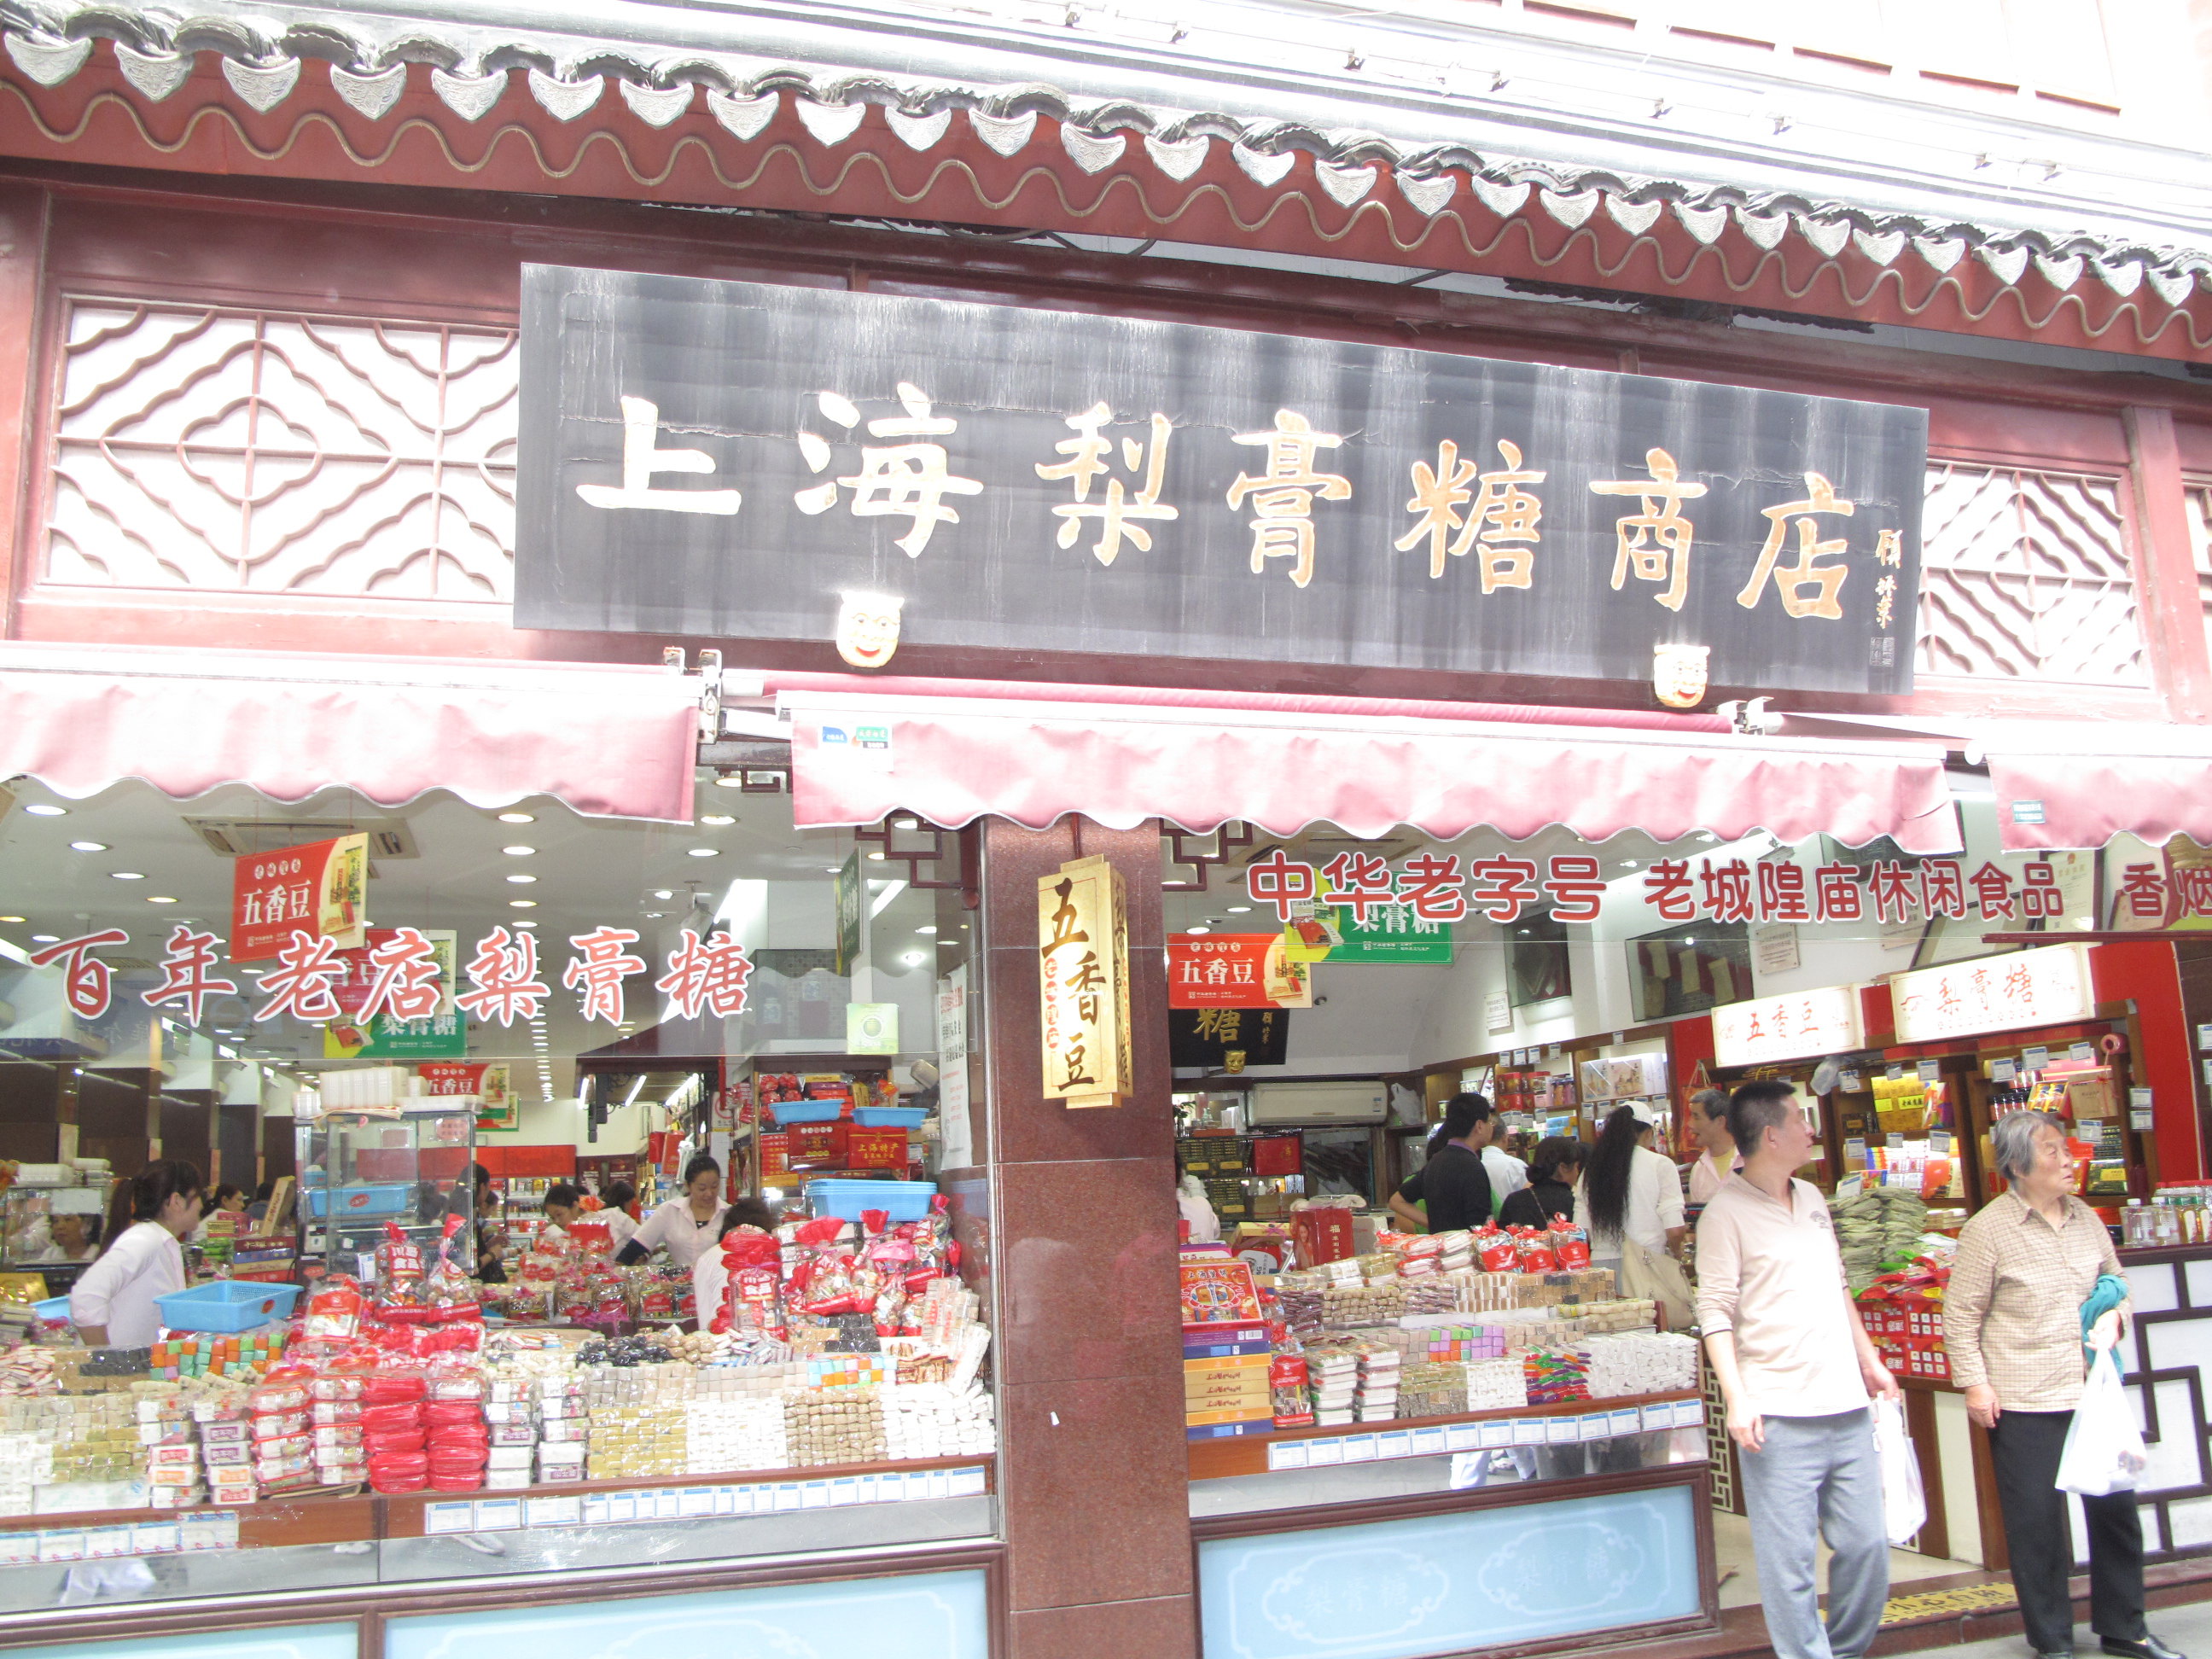 上海老牌商店梨膏糖 城隍庙旅游区